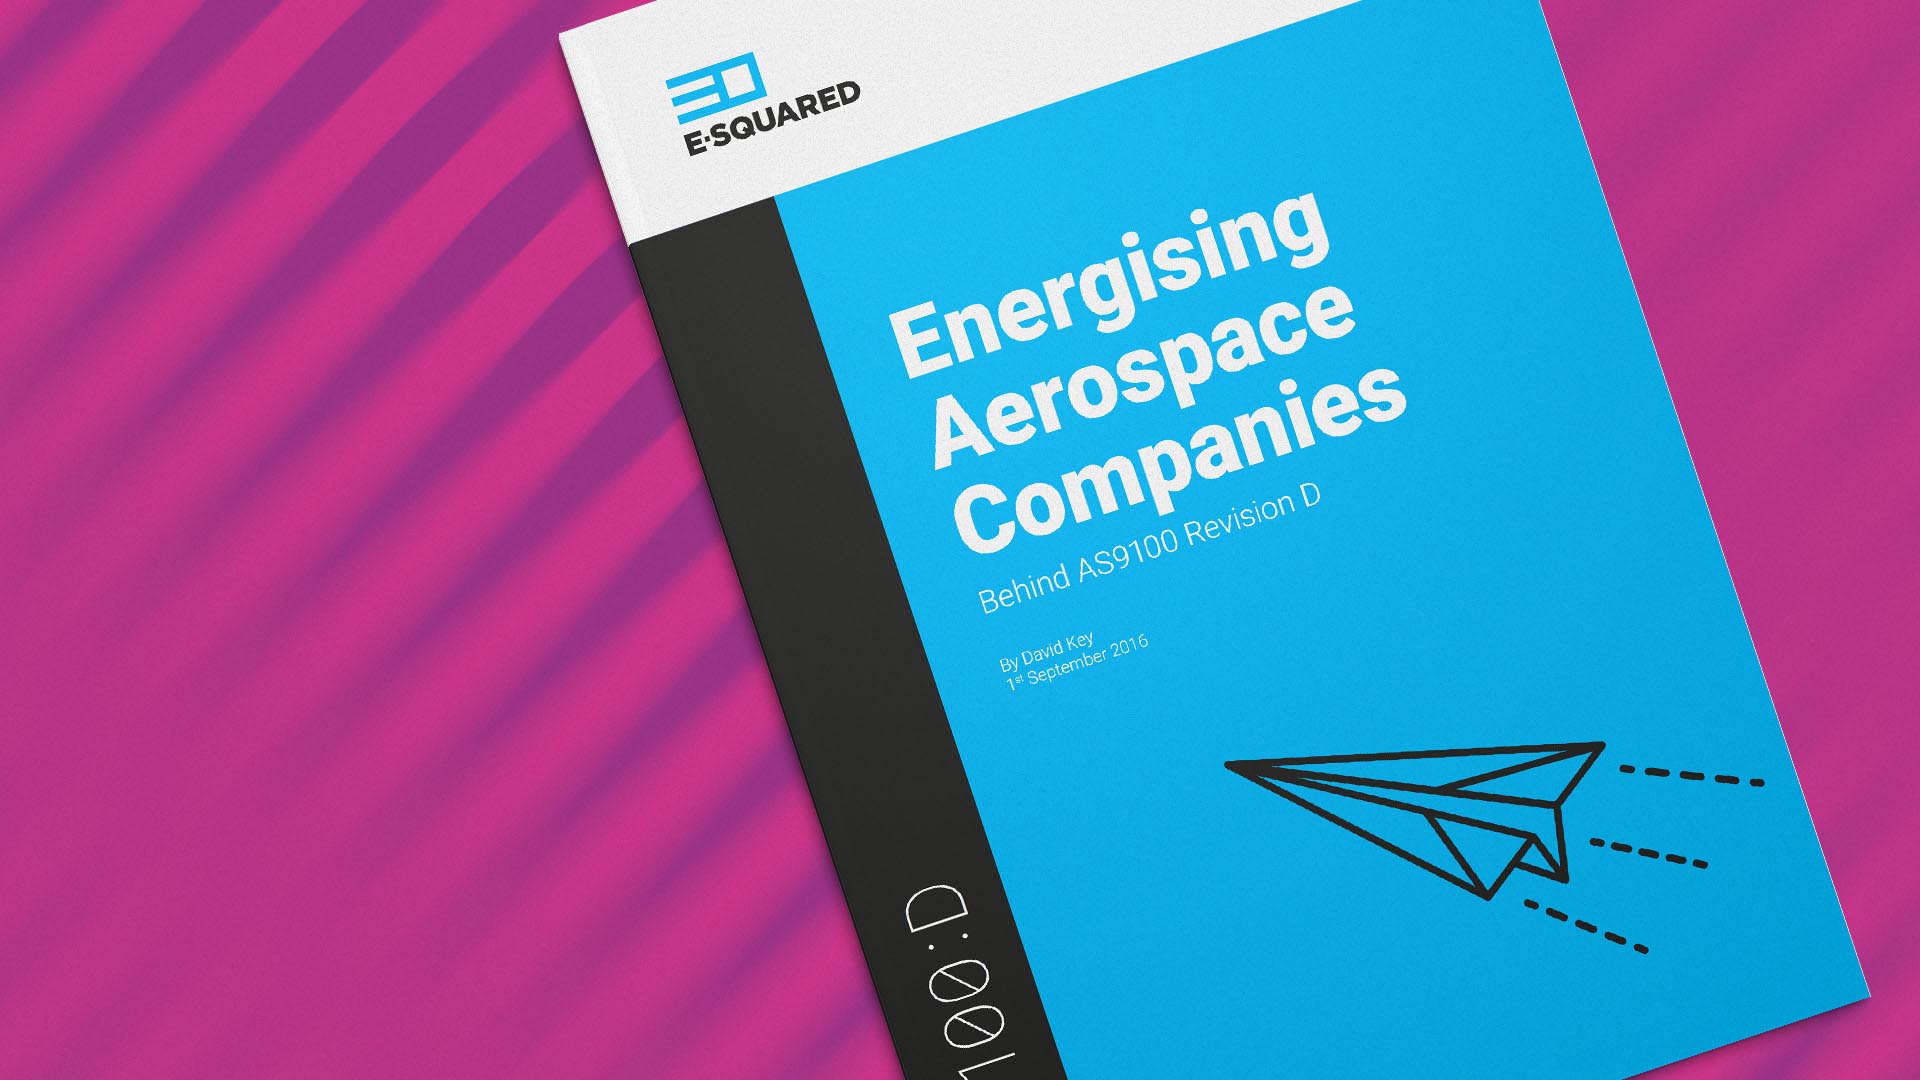 Energising aerospace companies behind AS9100 Rev D